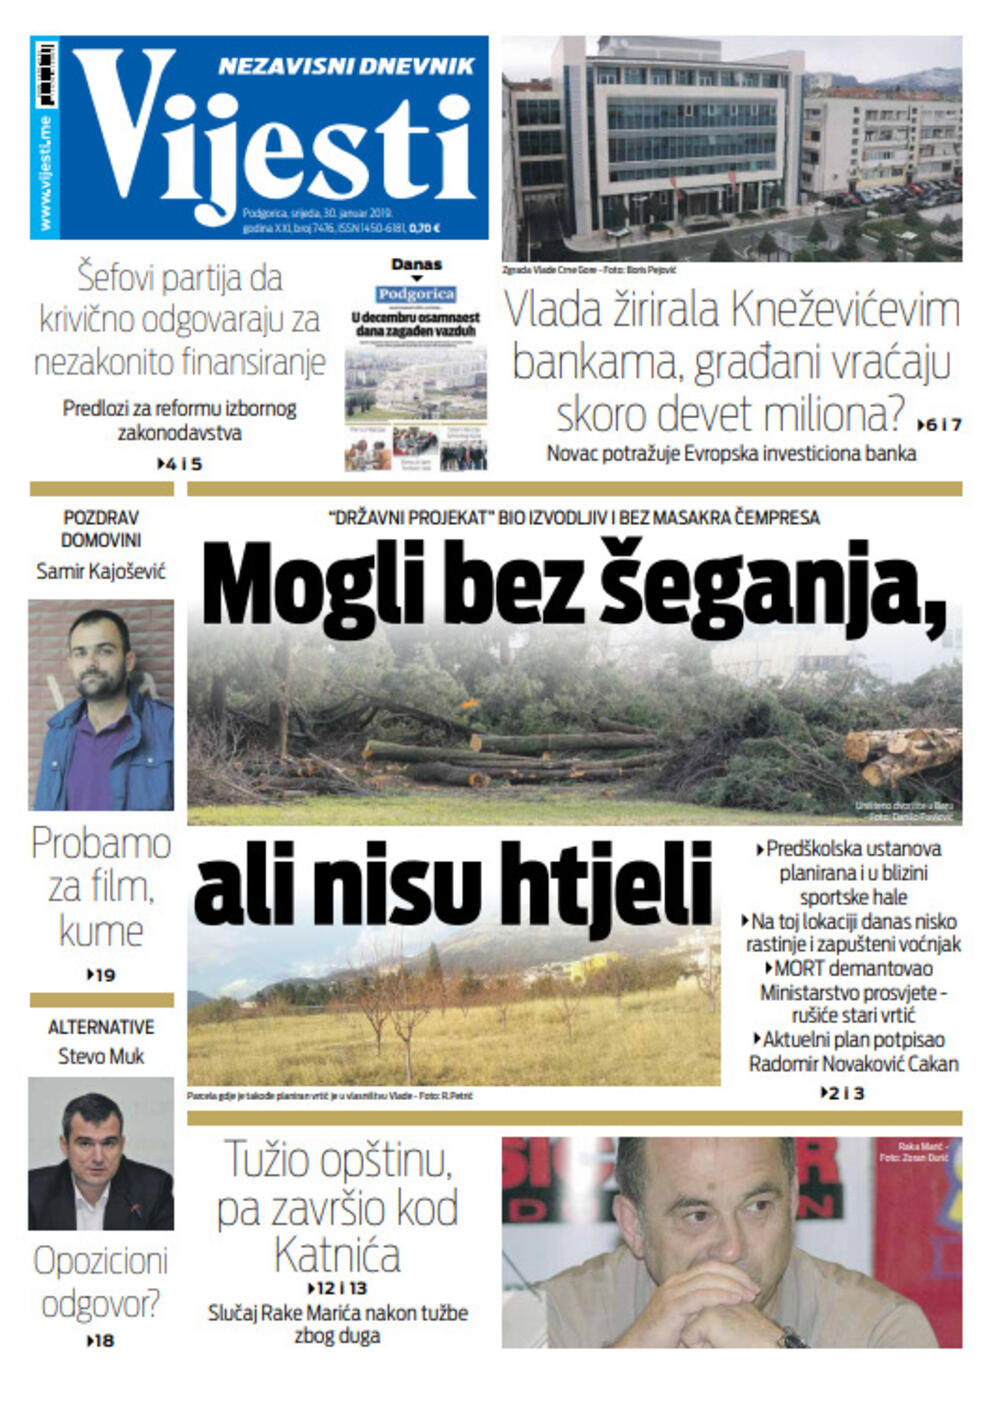 Naslovna strana "Vijesti" za 30. januar, Foto: Vijesti